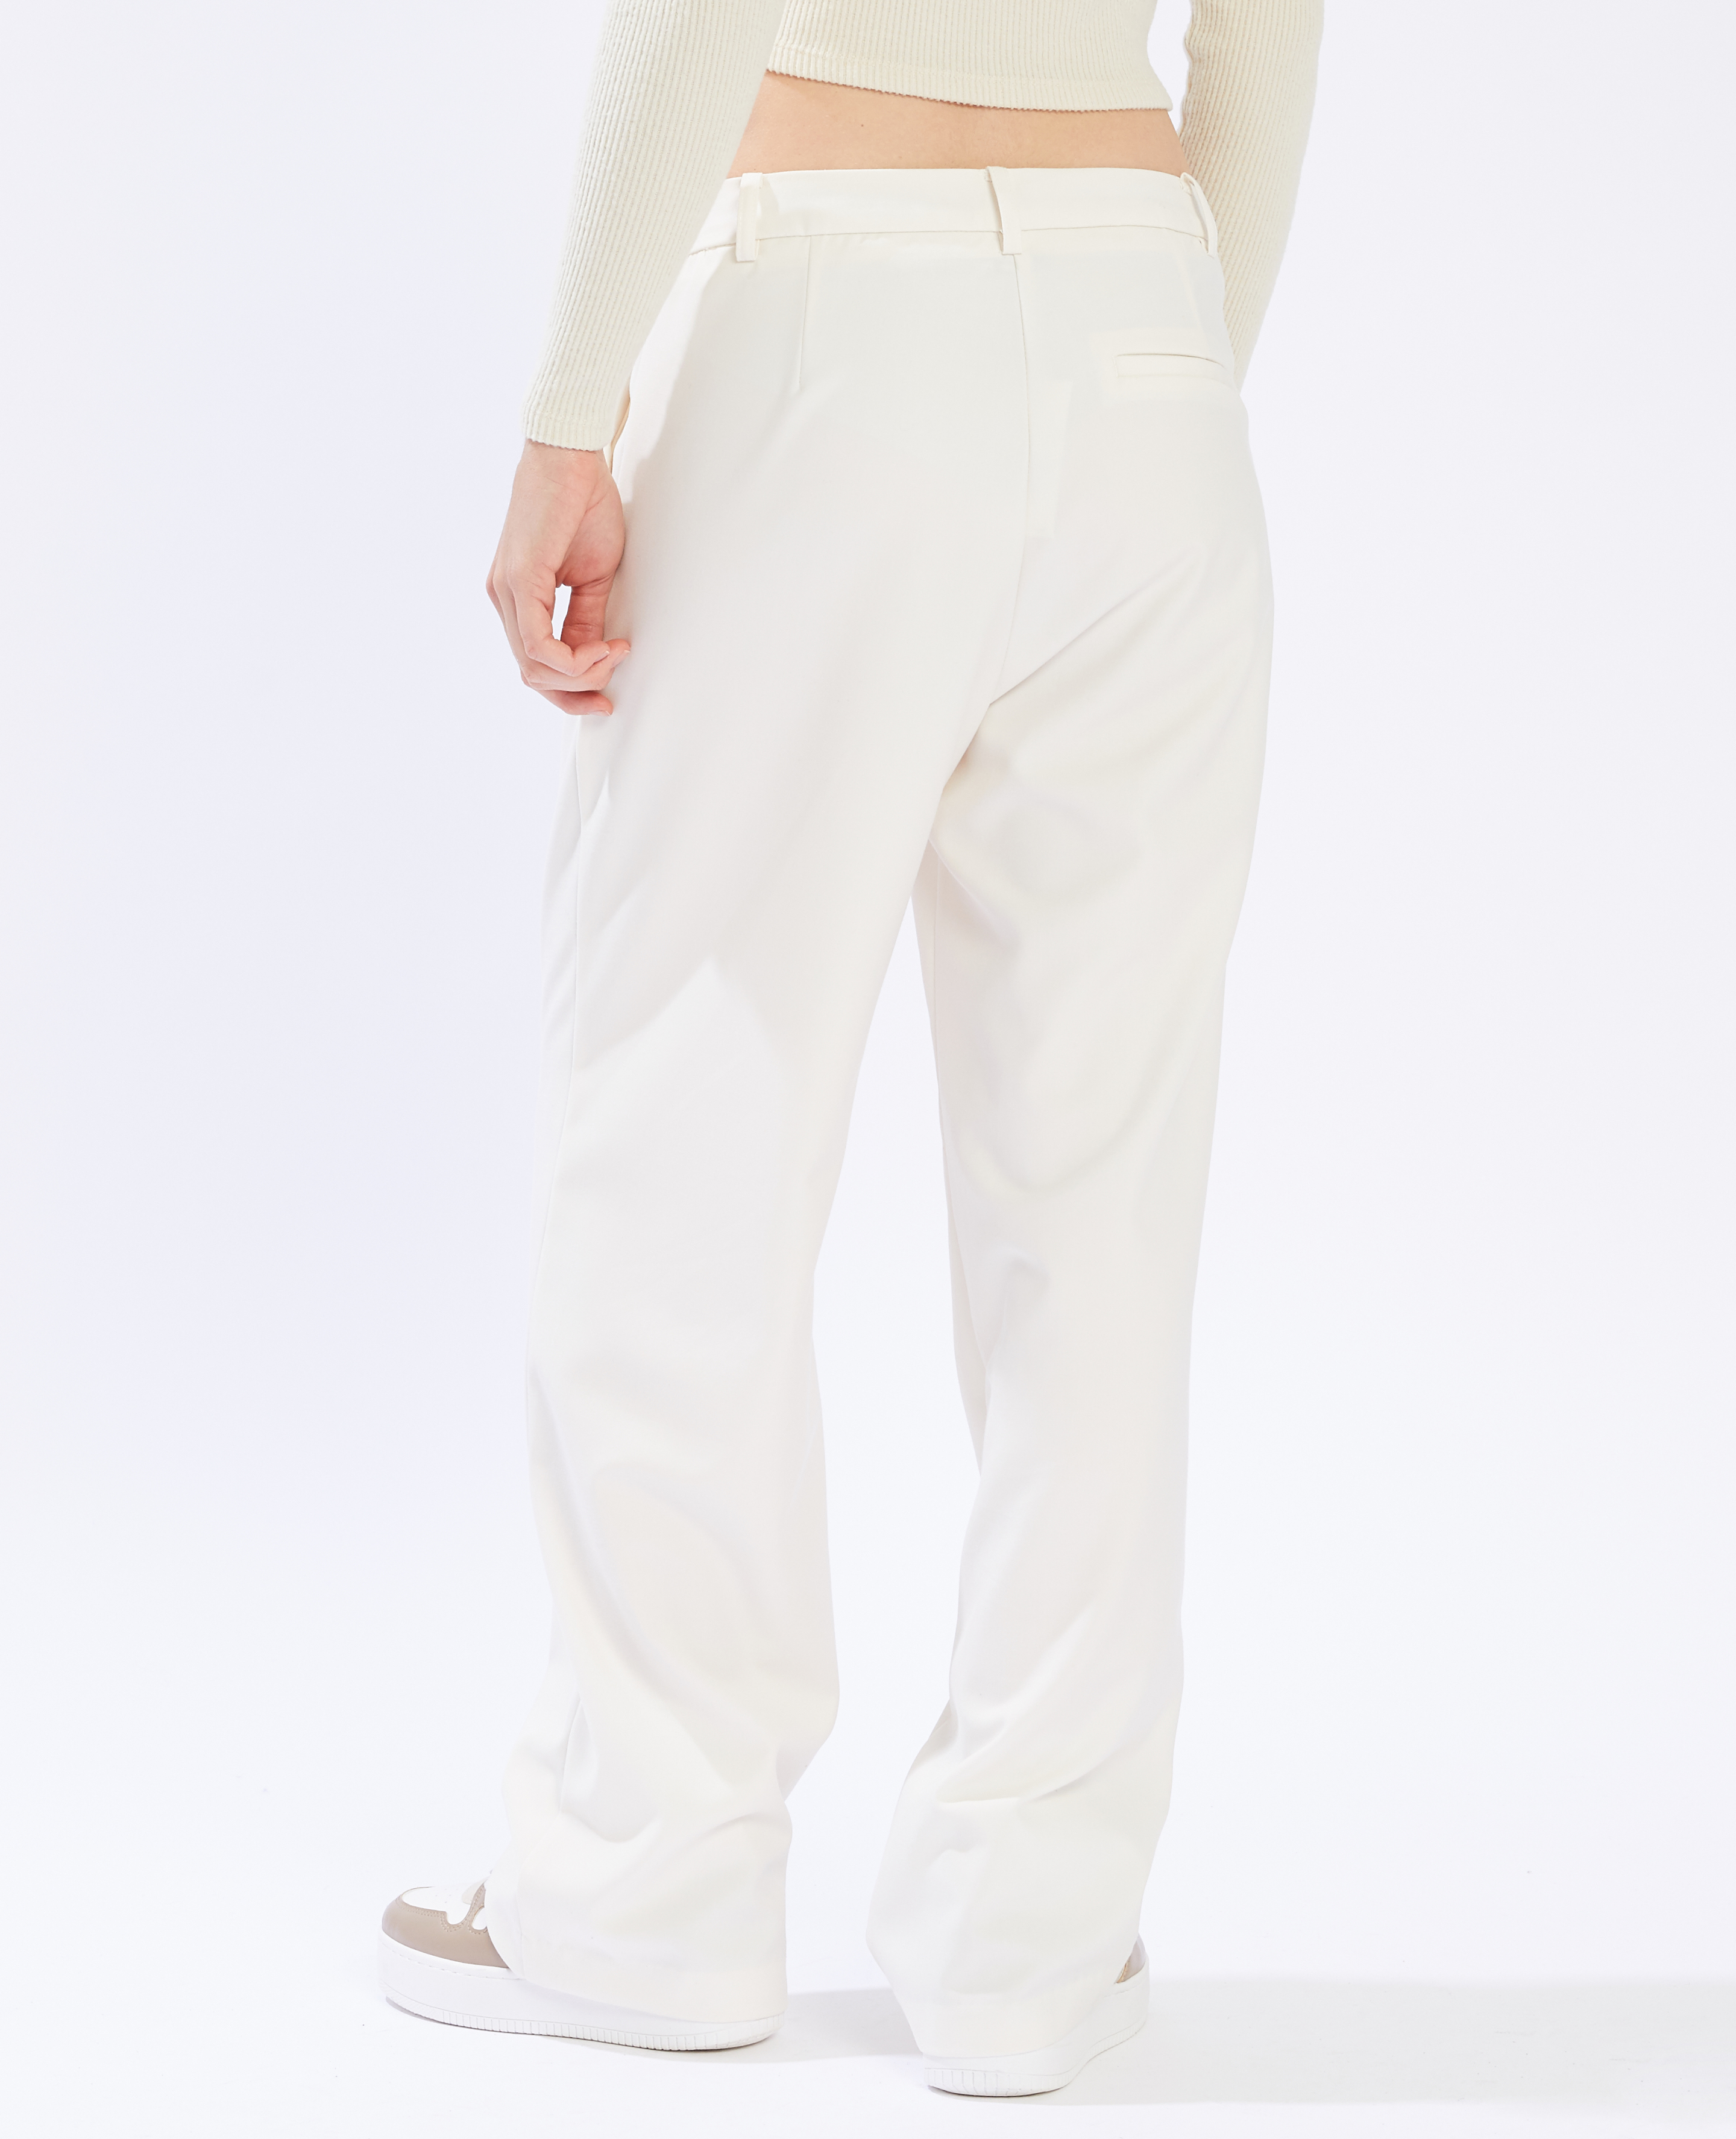 Pantalon à pinces blanc - Pimkie